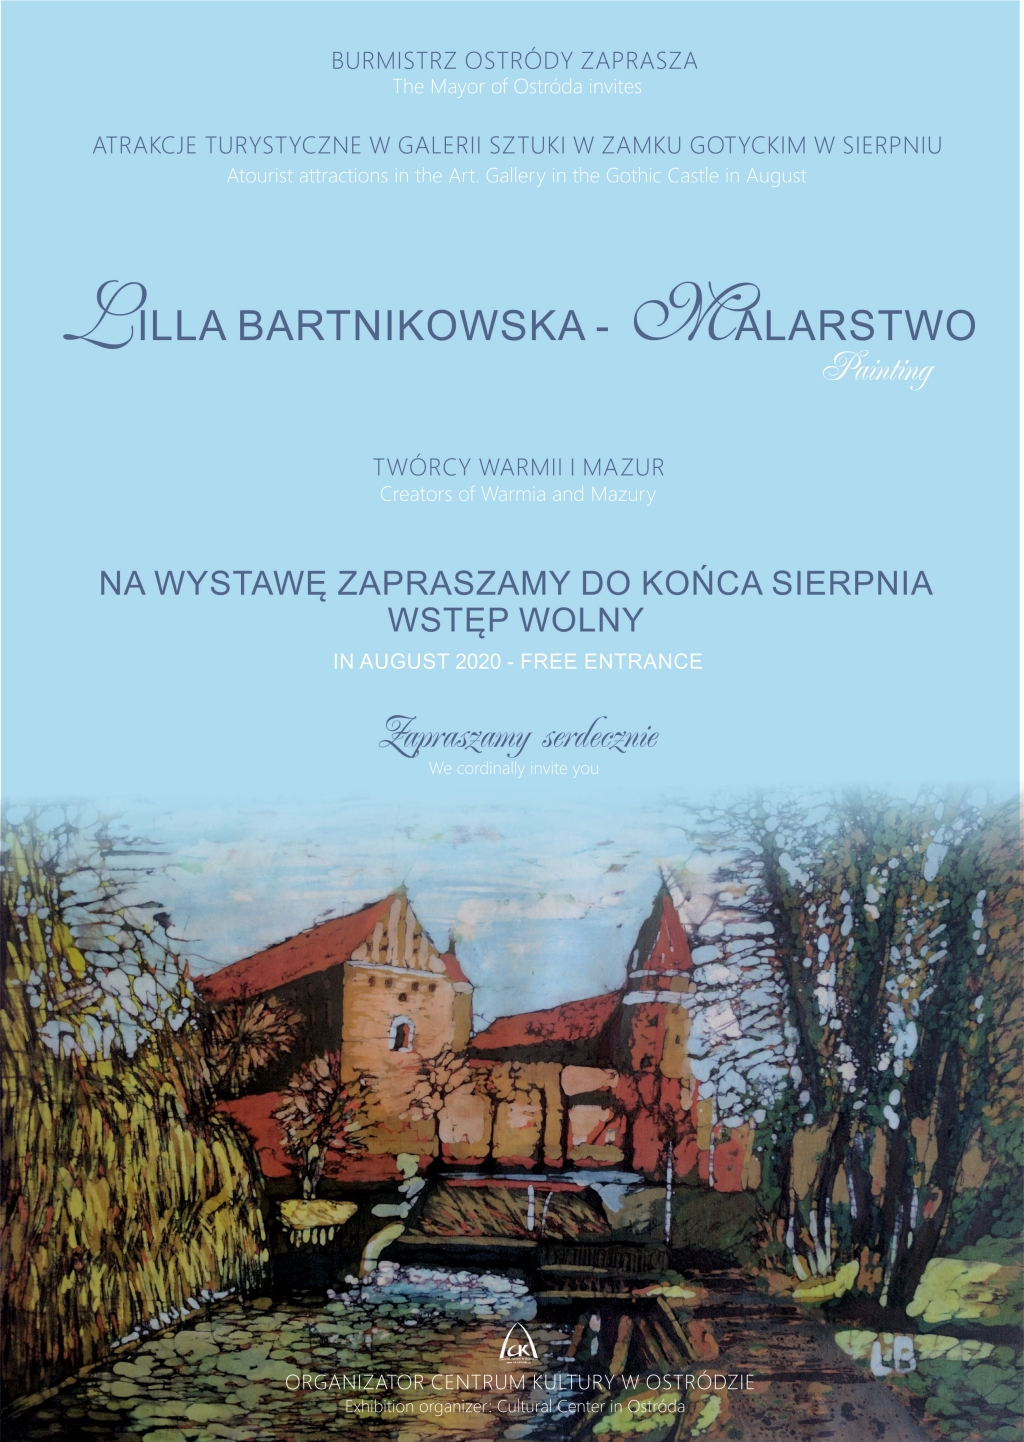 Wernisaż wystawy malarstwa Lilli Bartnikowskiej